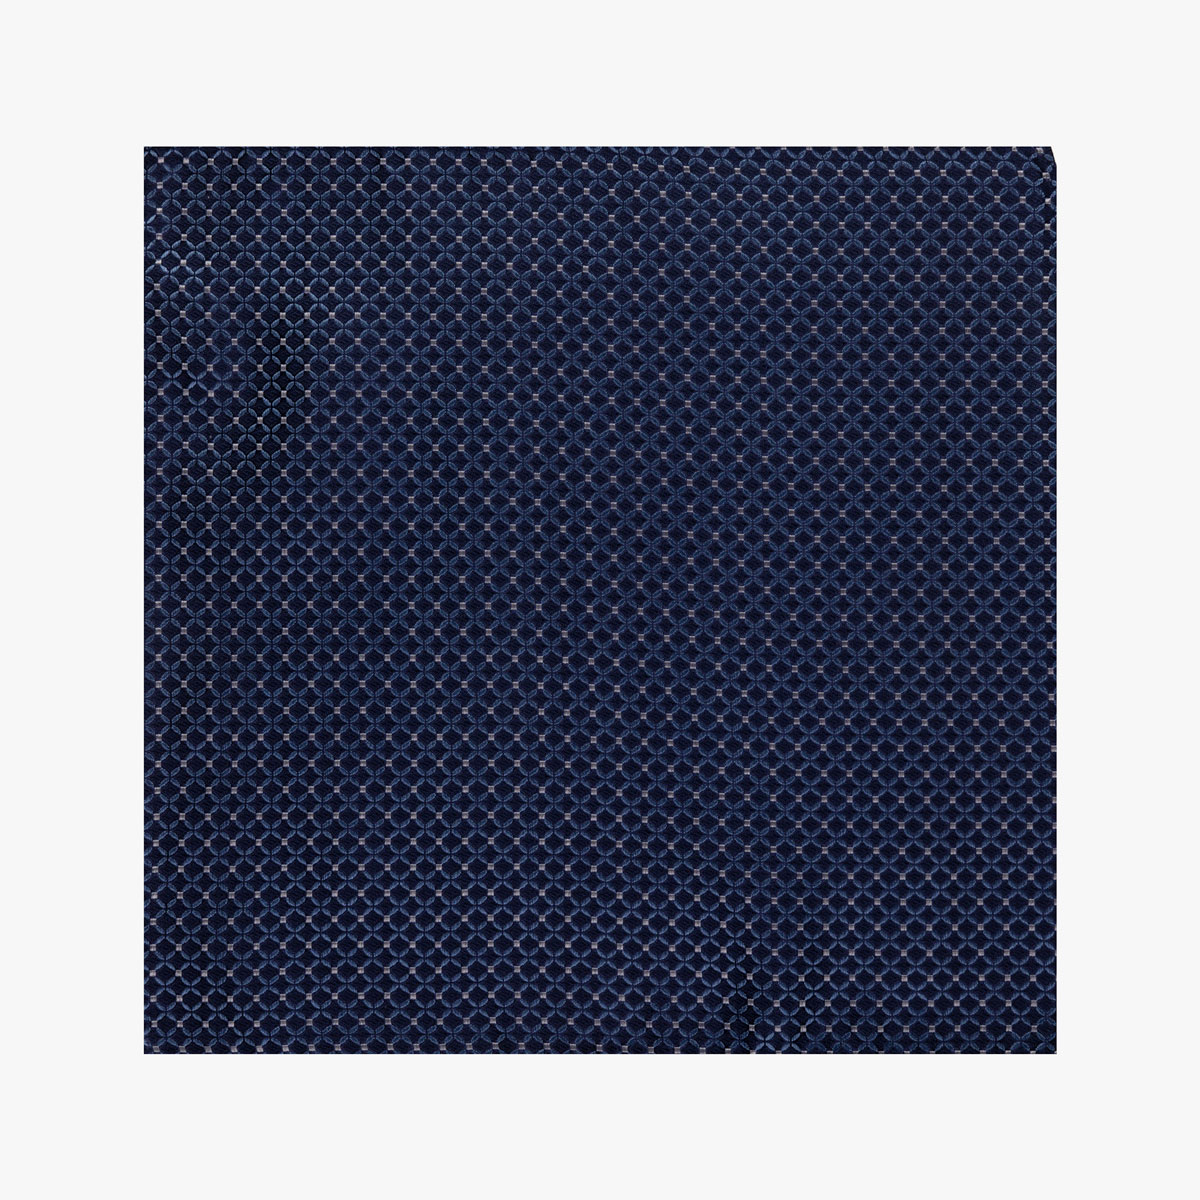 Einstecktuch mit geometrischem Muster in dunkelblau silber